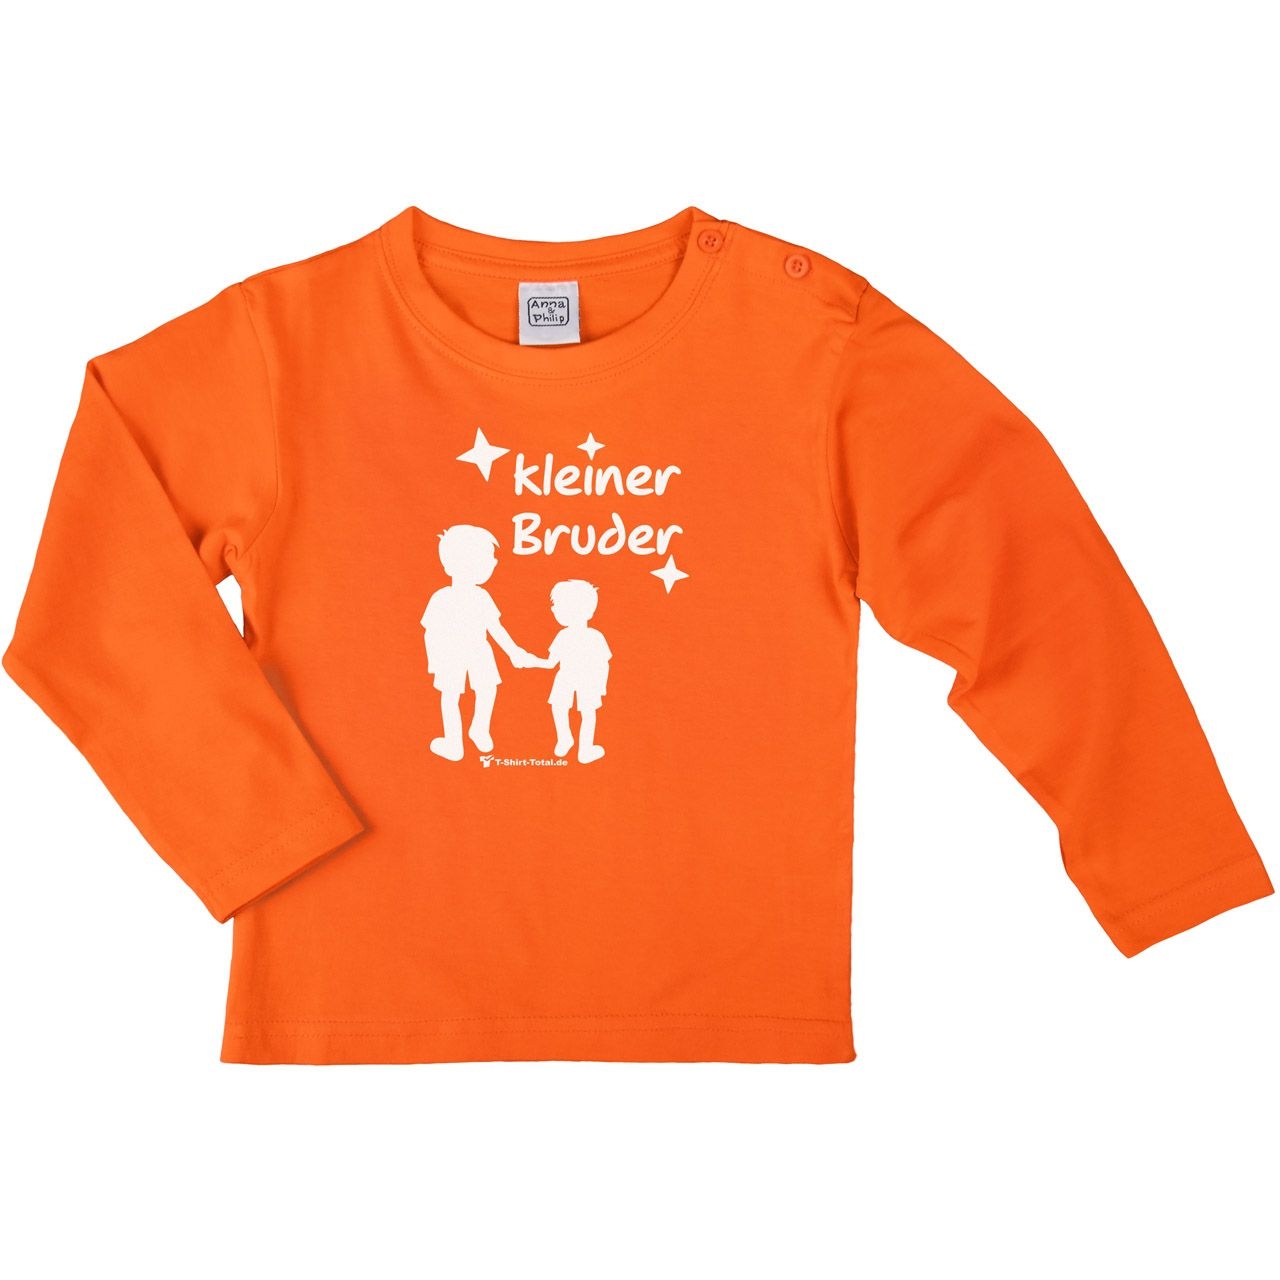 Kleiner Bruder JJ Kinder Langarm Shirt orange 56 / 62